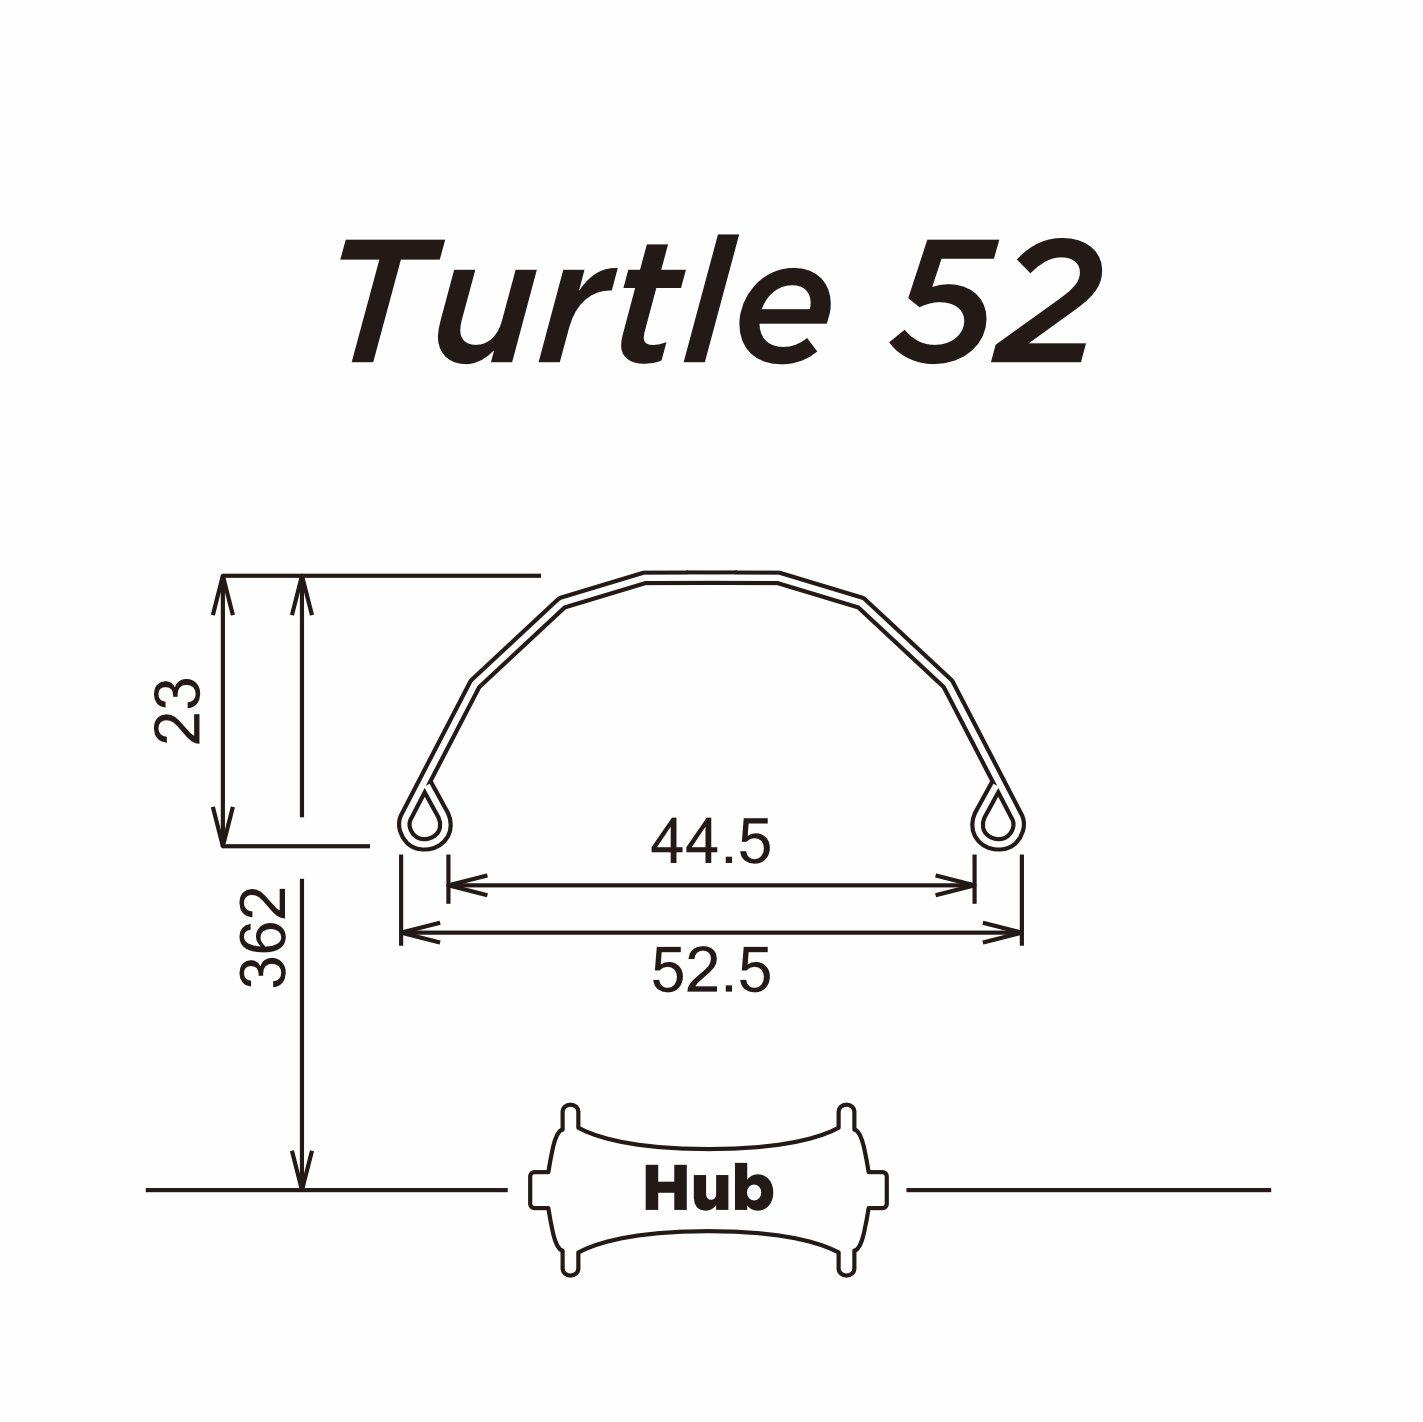 SIMWORKS Turtle 52